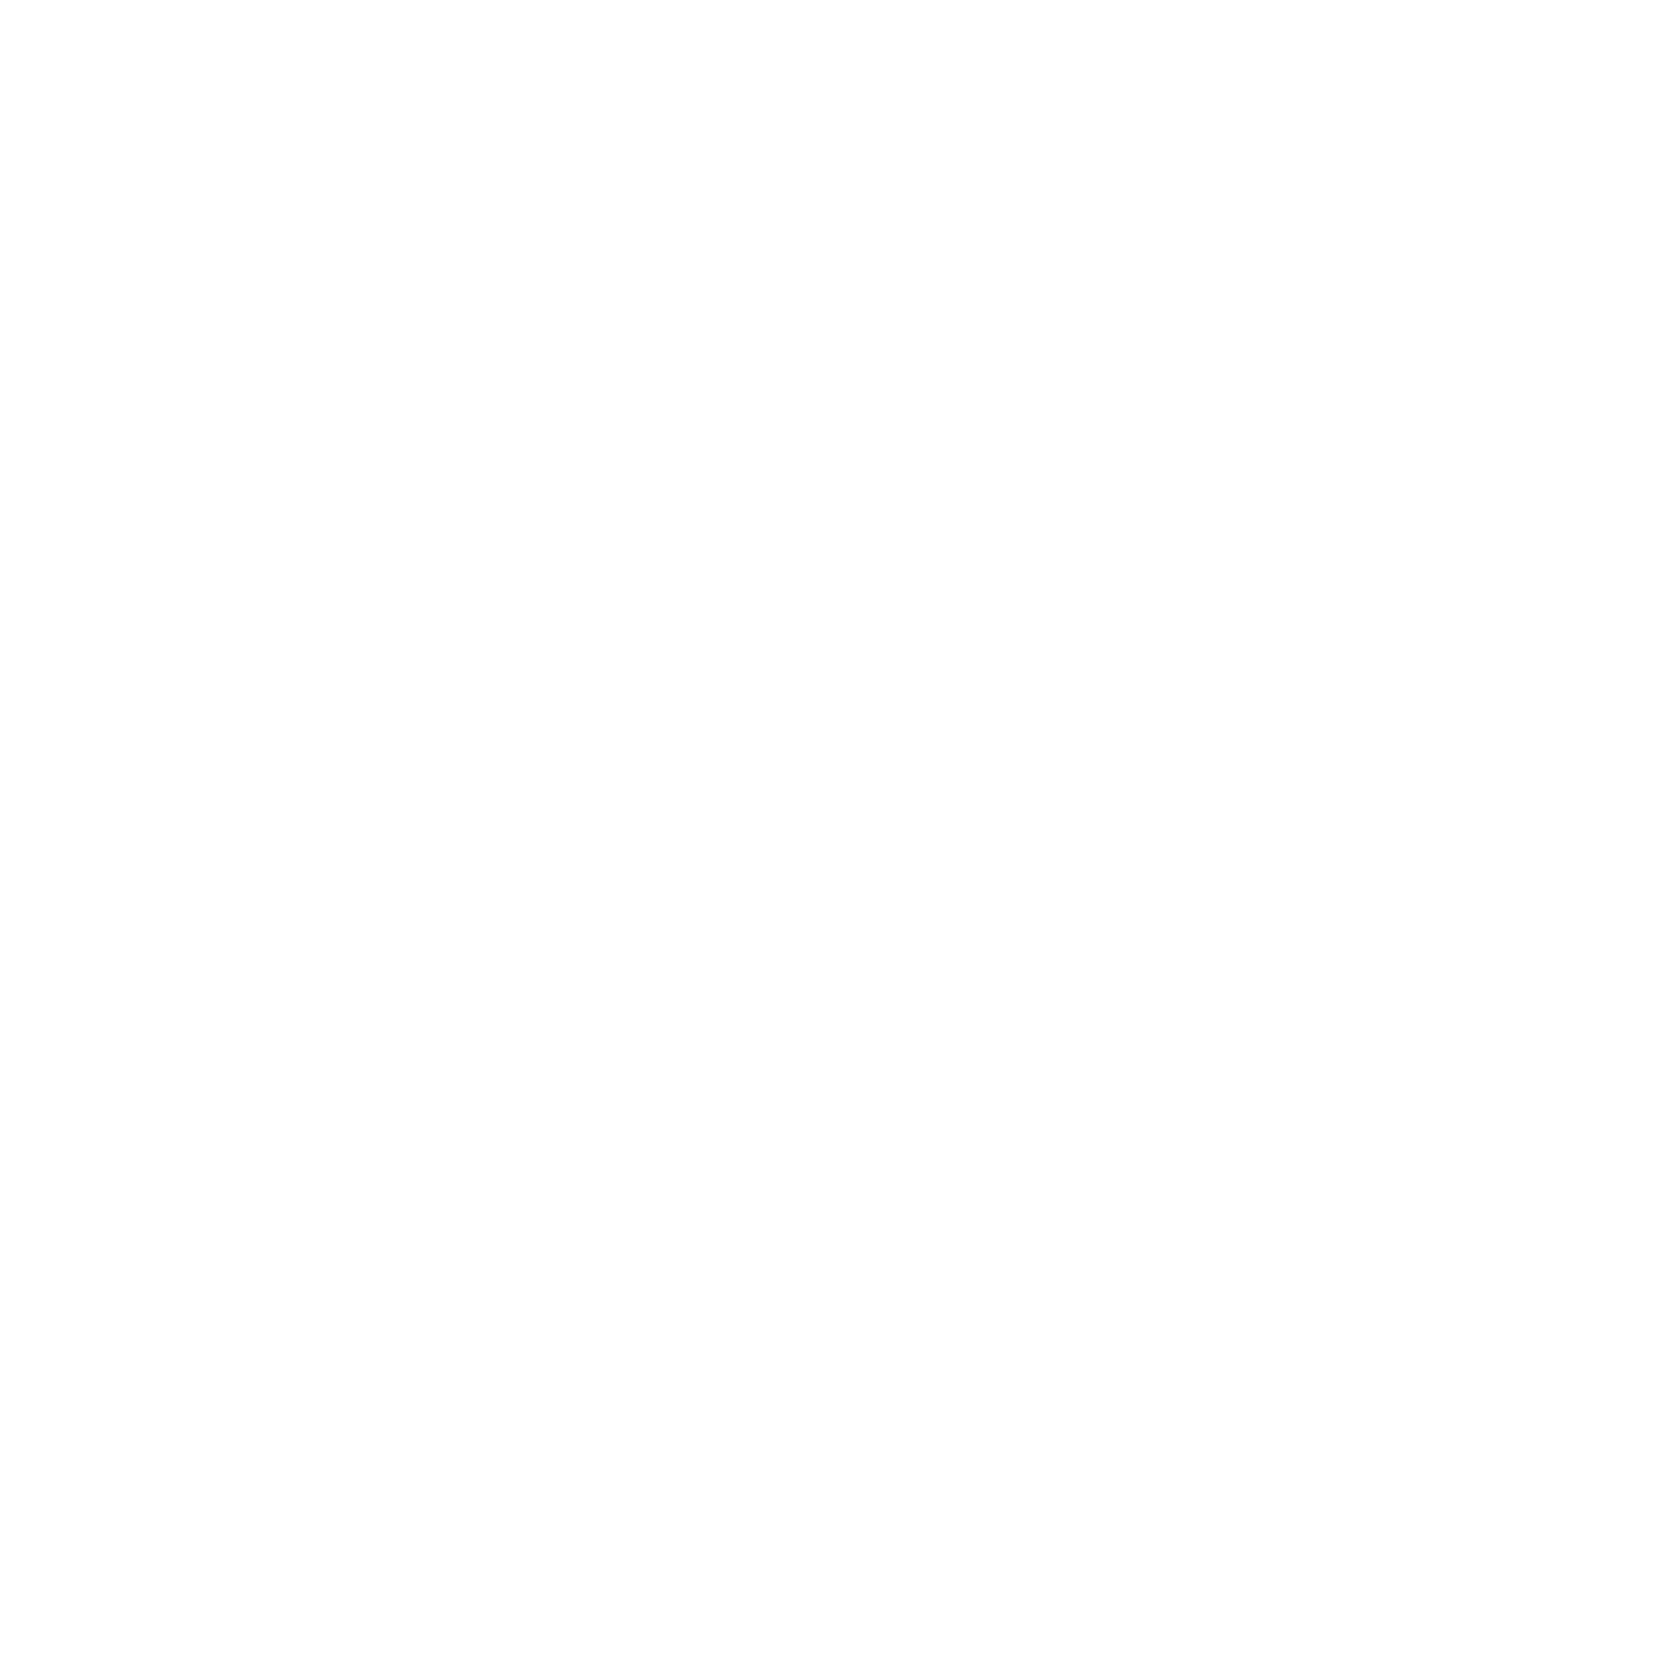 Multisite Creator's Club